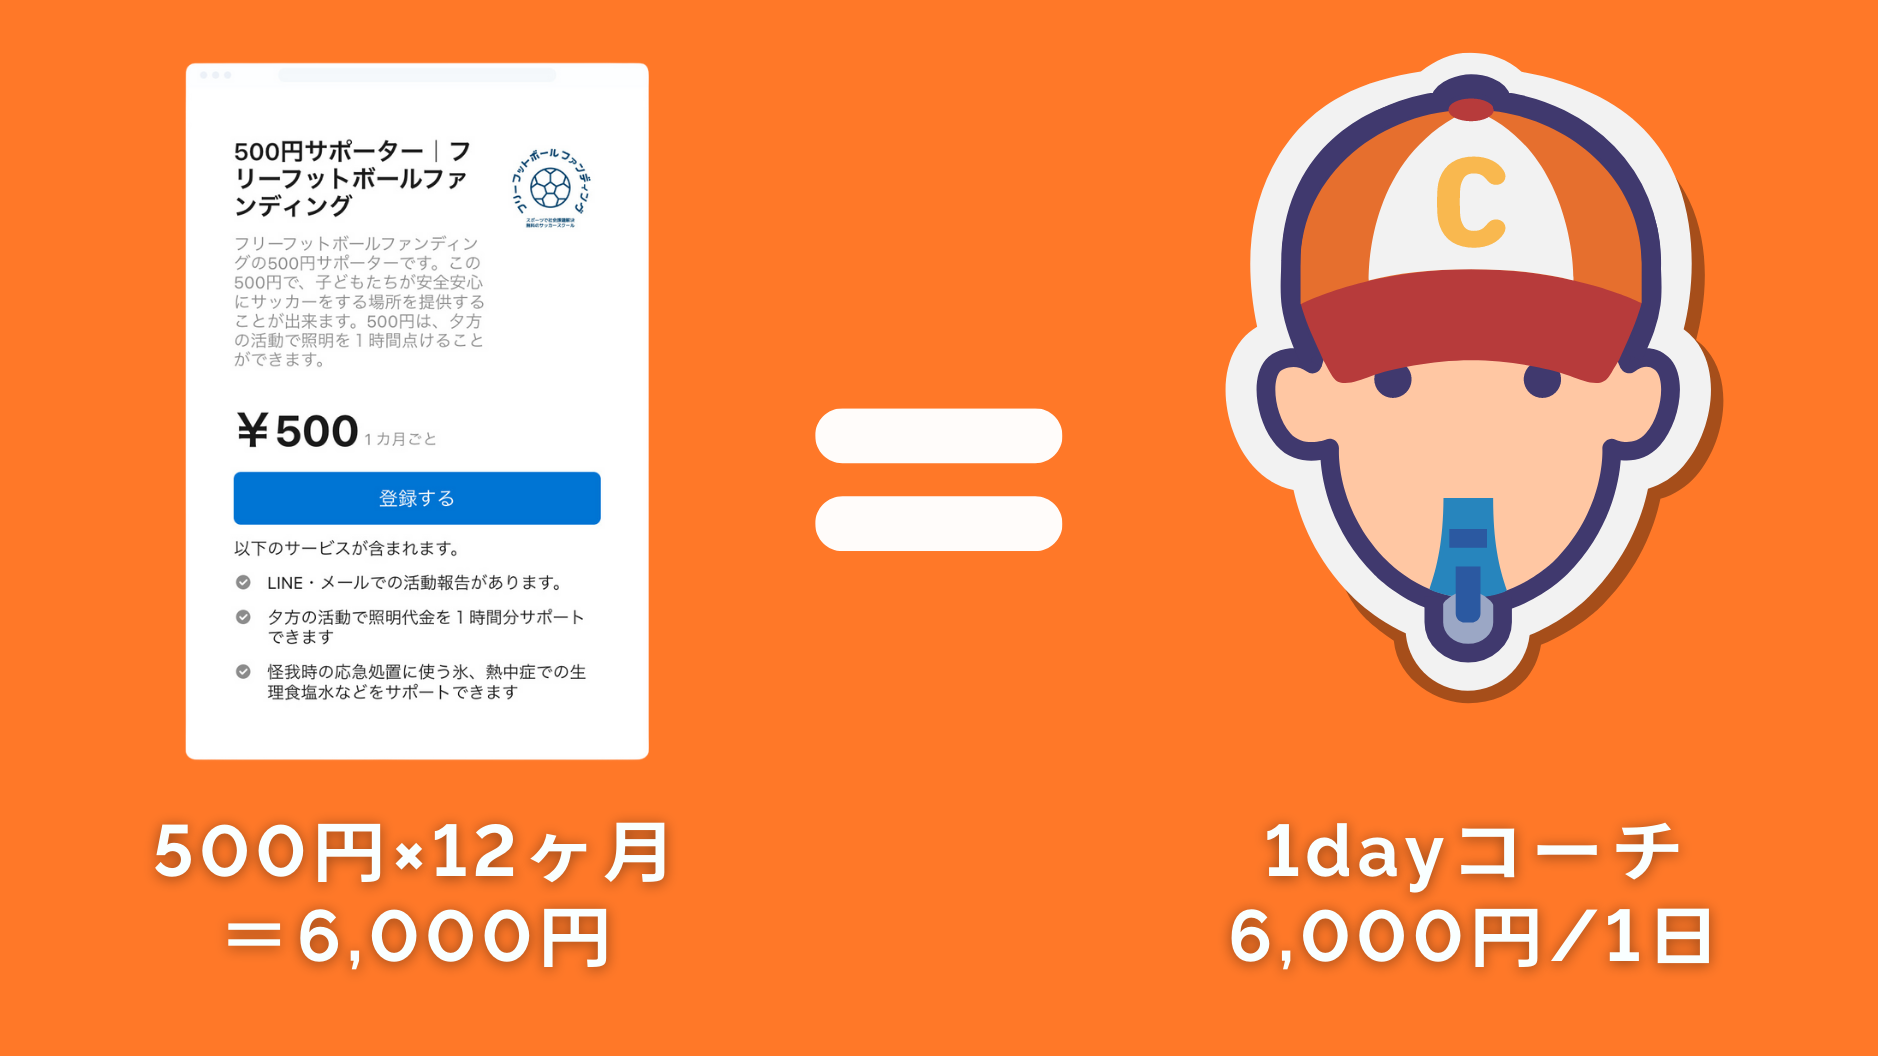 500円×12ヶ月
＝6,000円
1dayコーチ
6,000円/1日